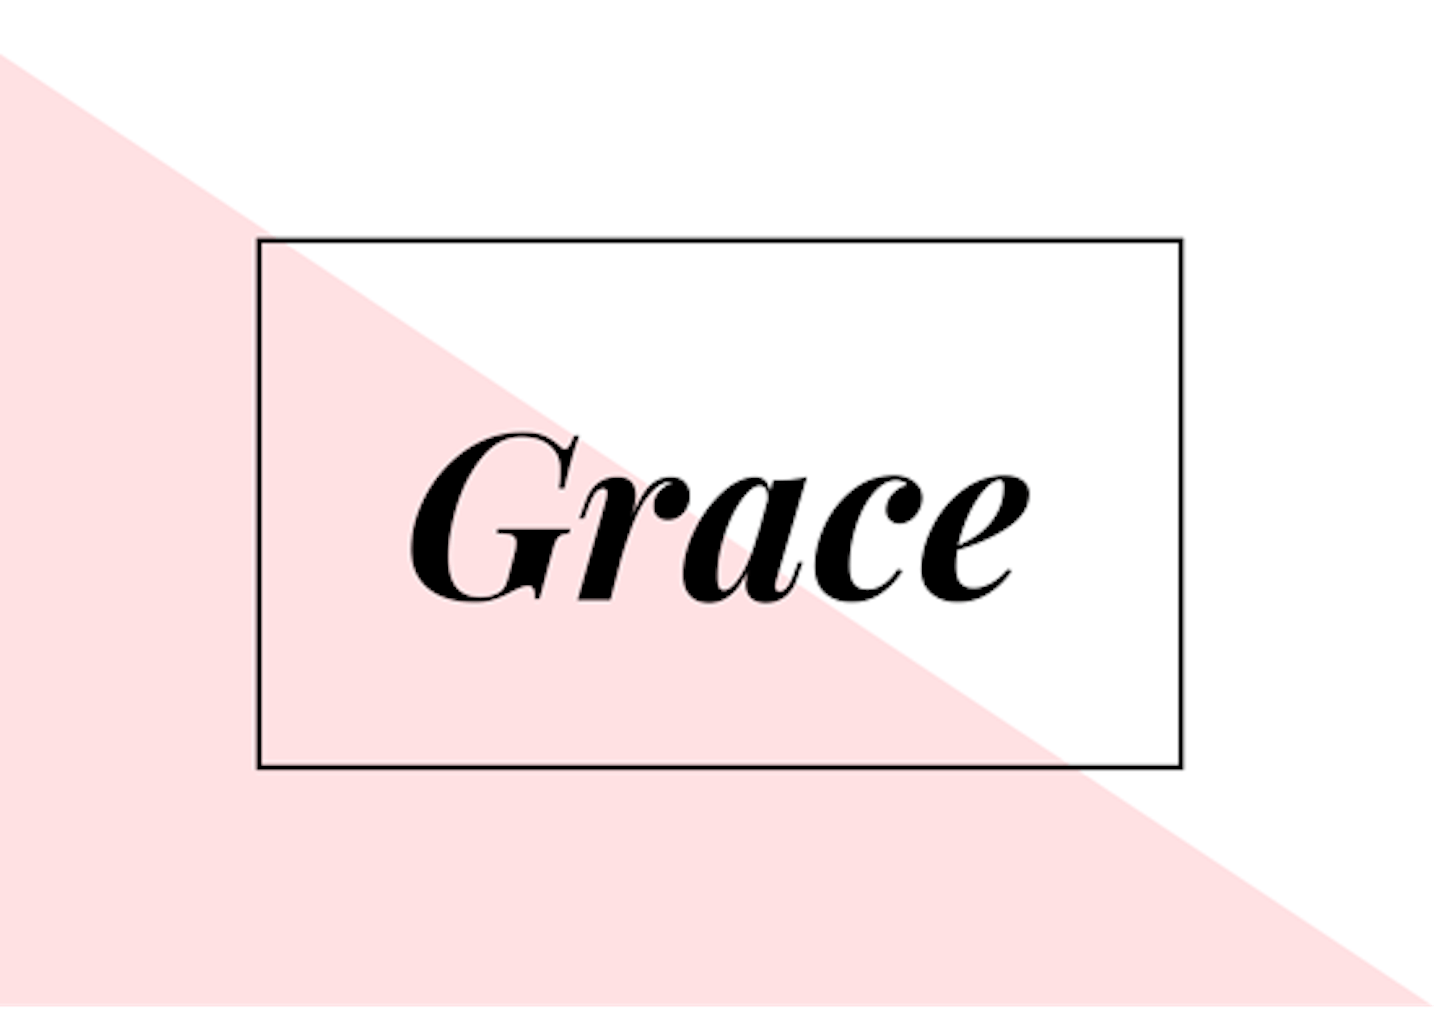 13) Grace